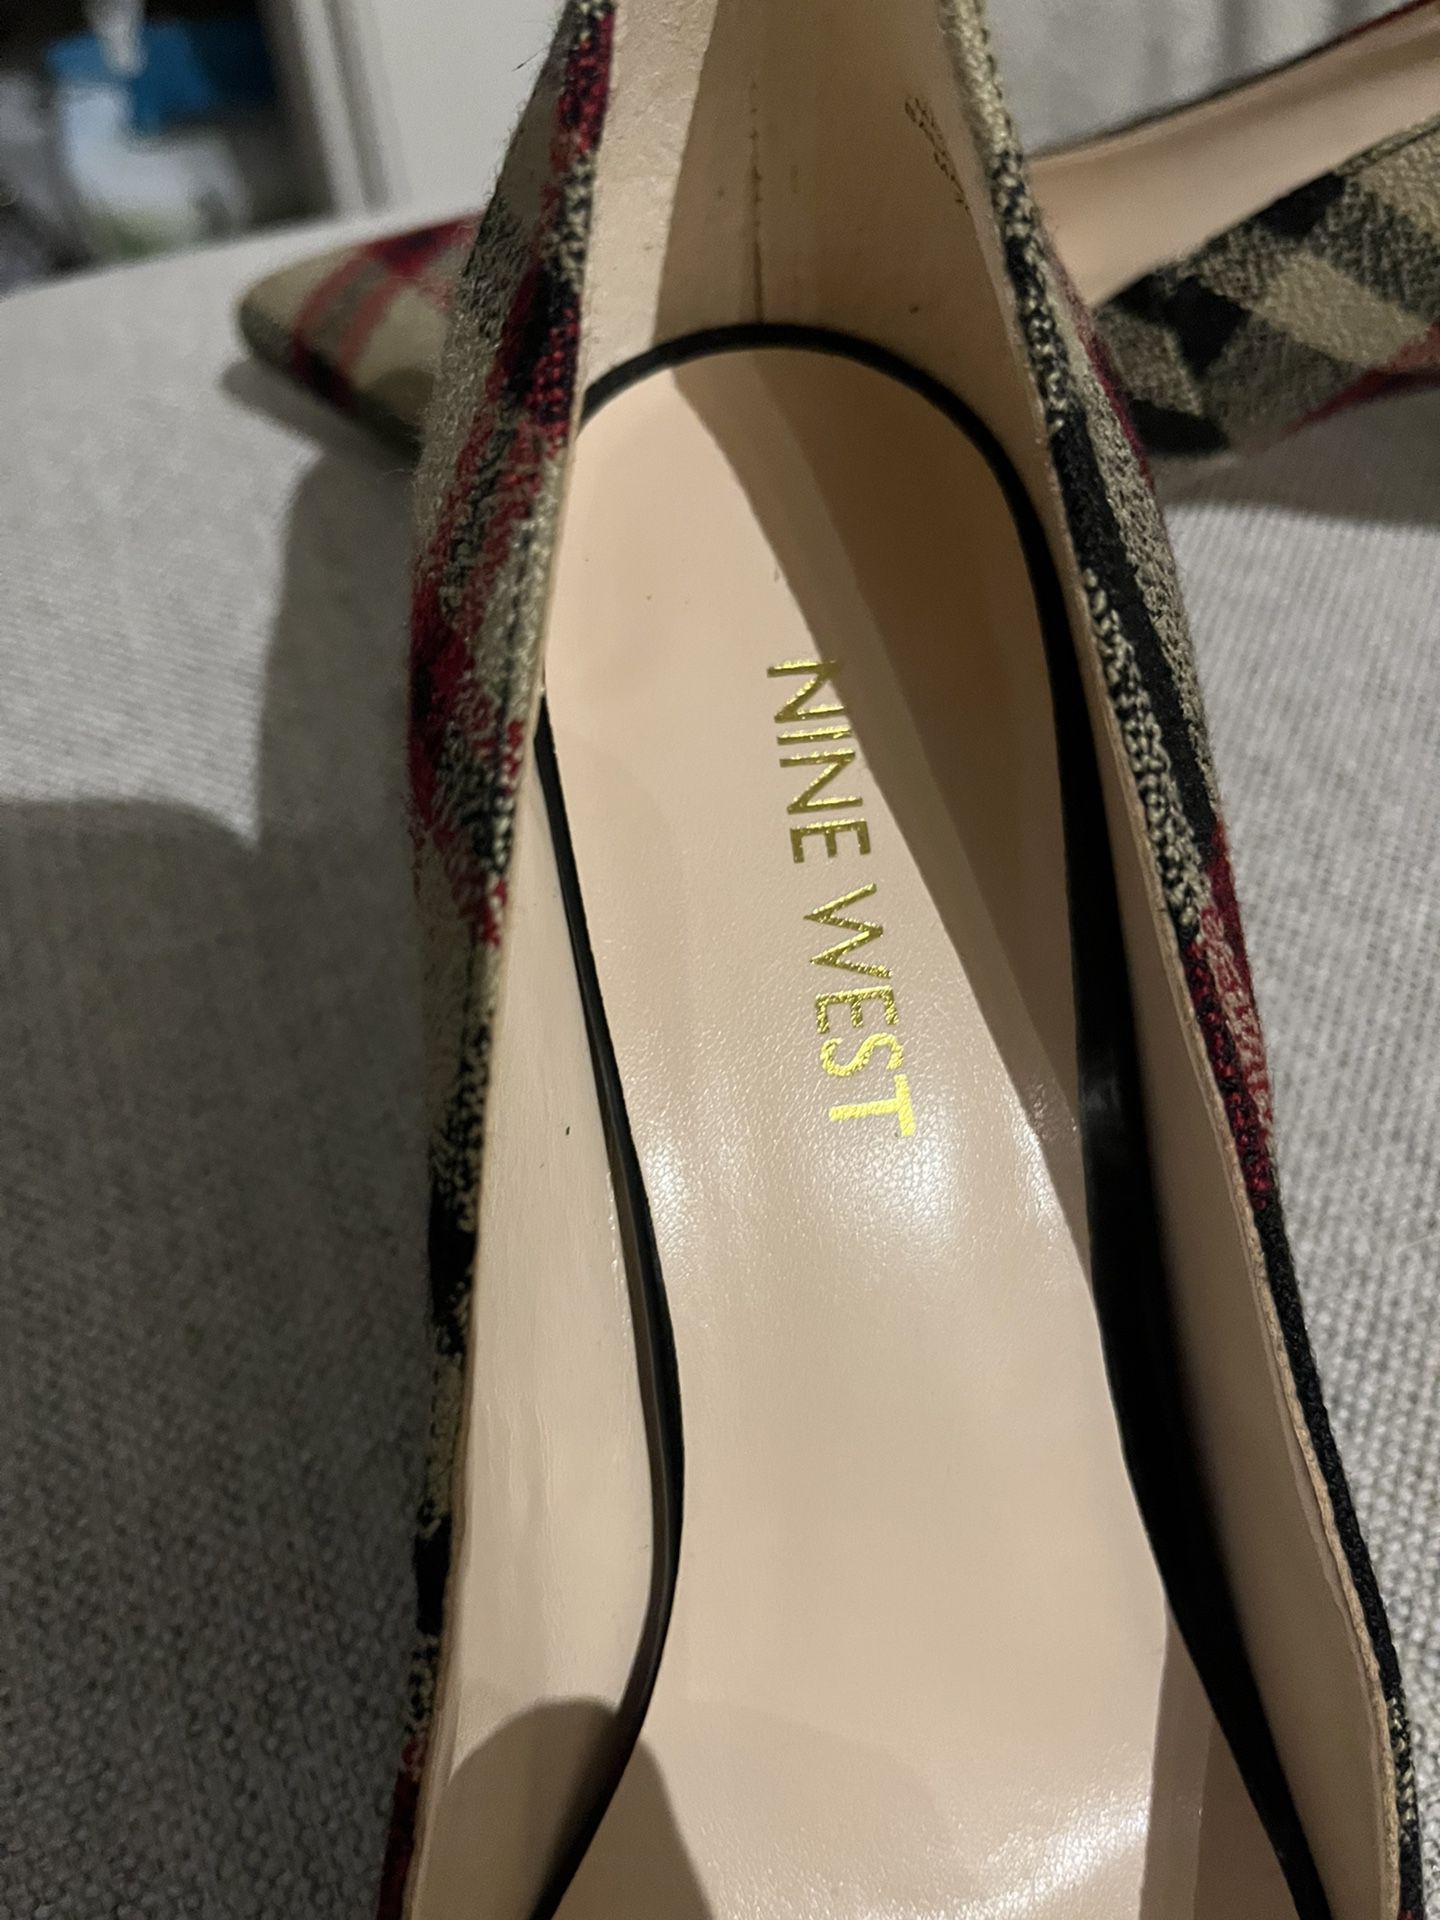 Ladies Shoes - Nine West Heels (Never Worn)